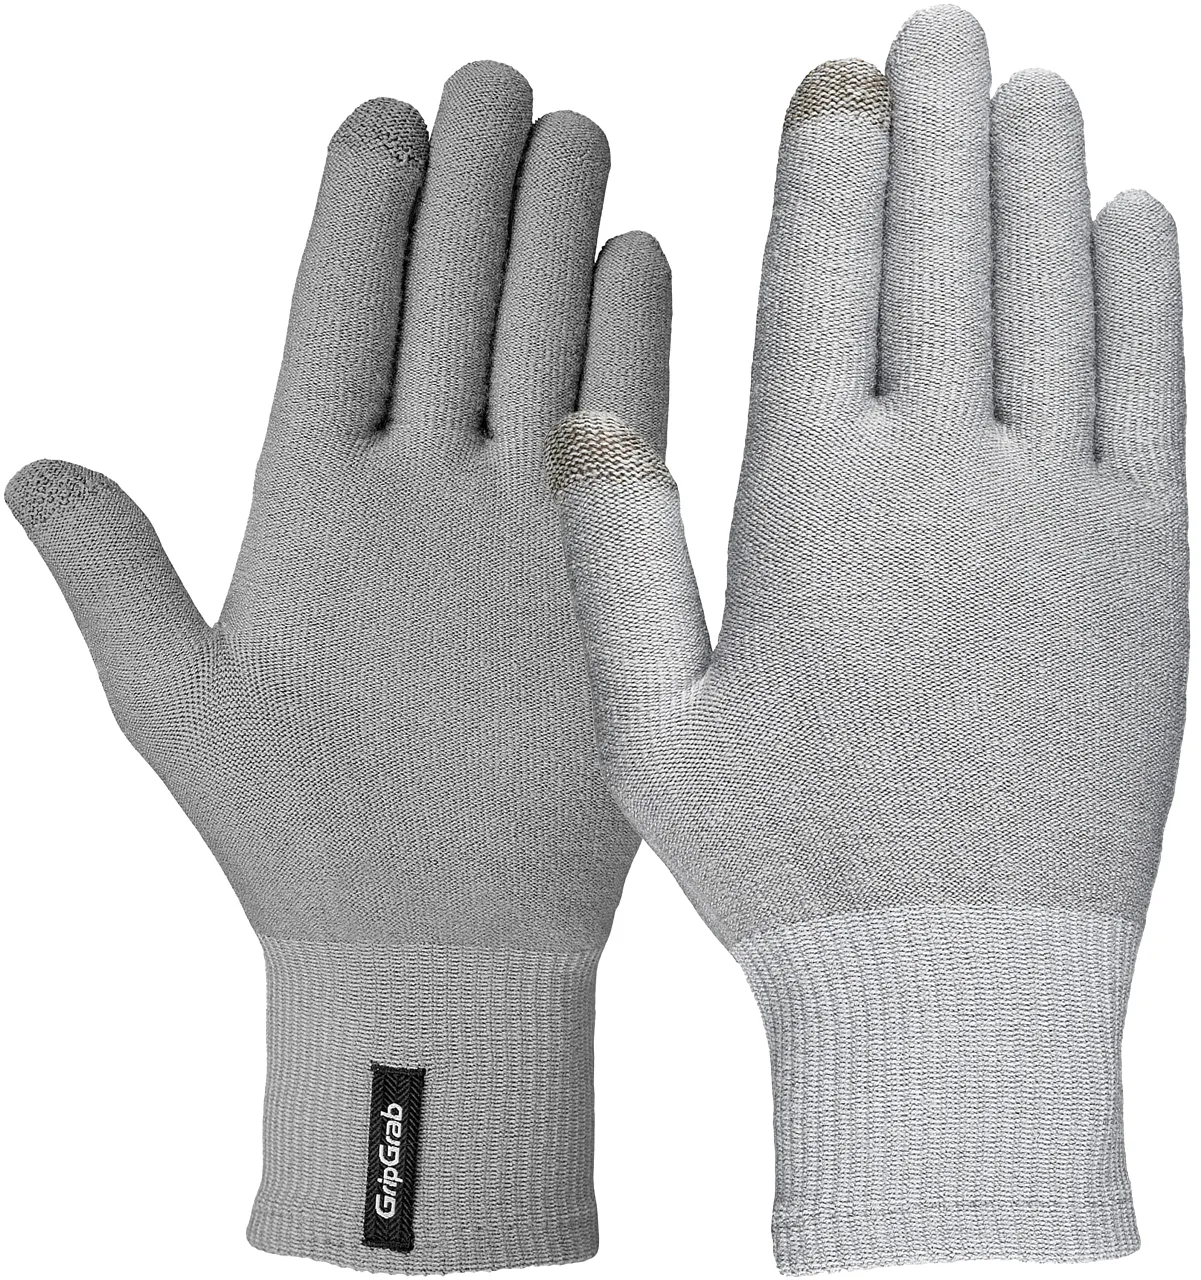 GripGrab Merino Wool Thermal Full Finger Liner Gloves